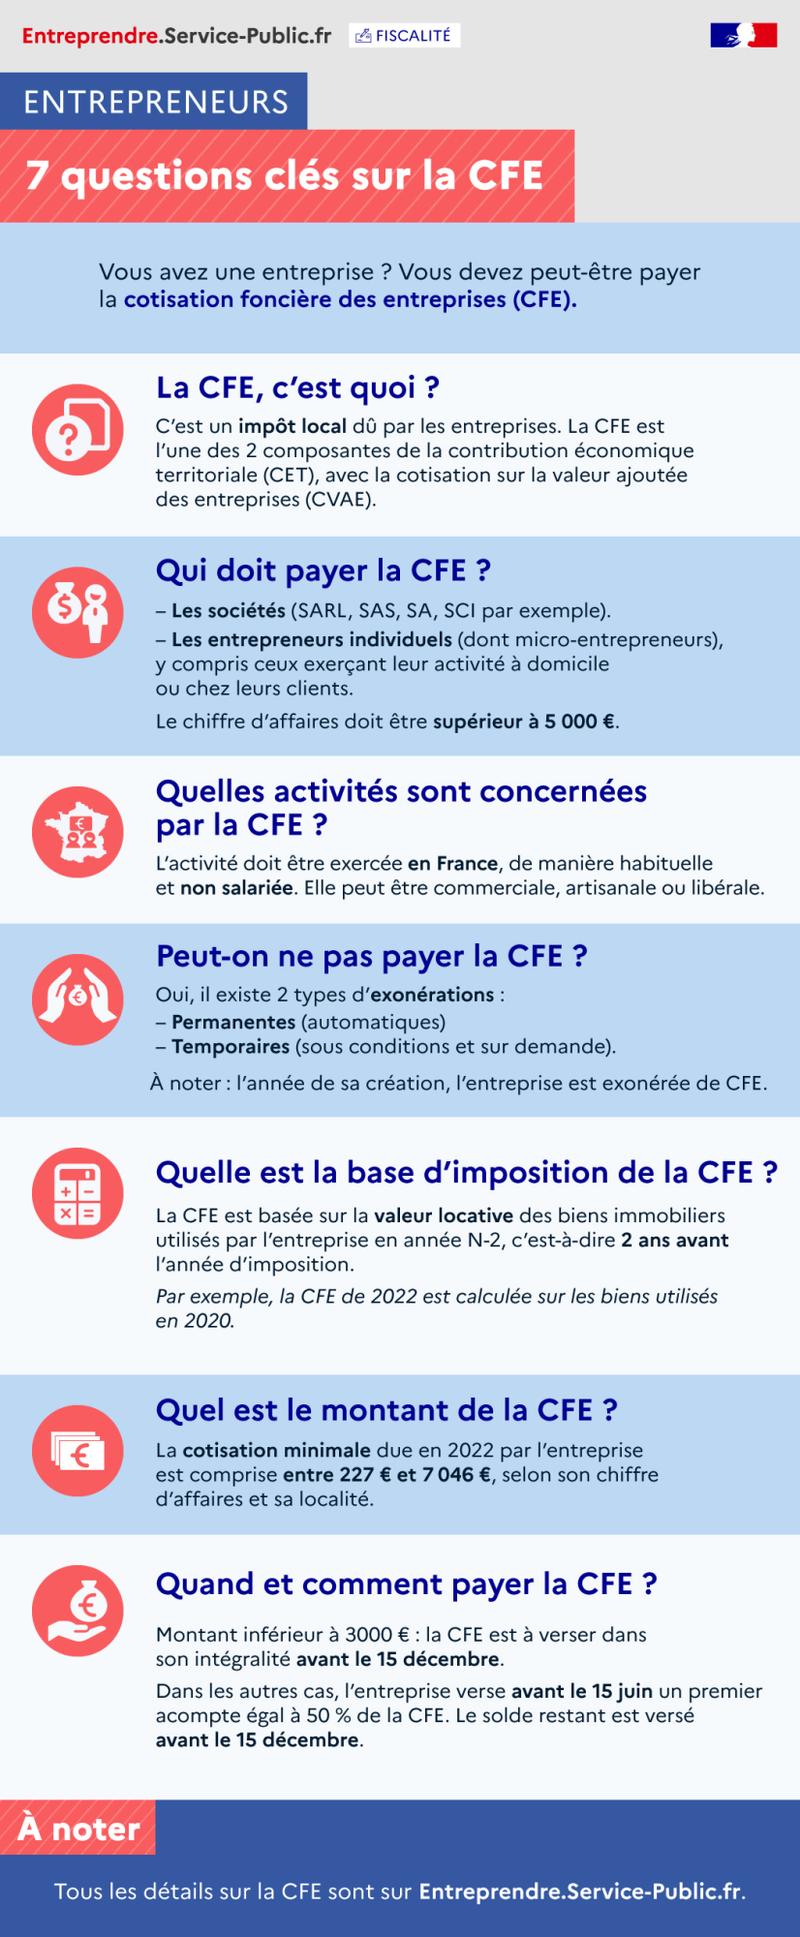 Points clés sur la CFE - plus de détails dans le texte suivant l’infographie